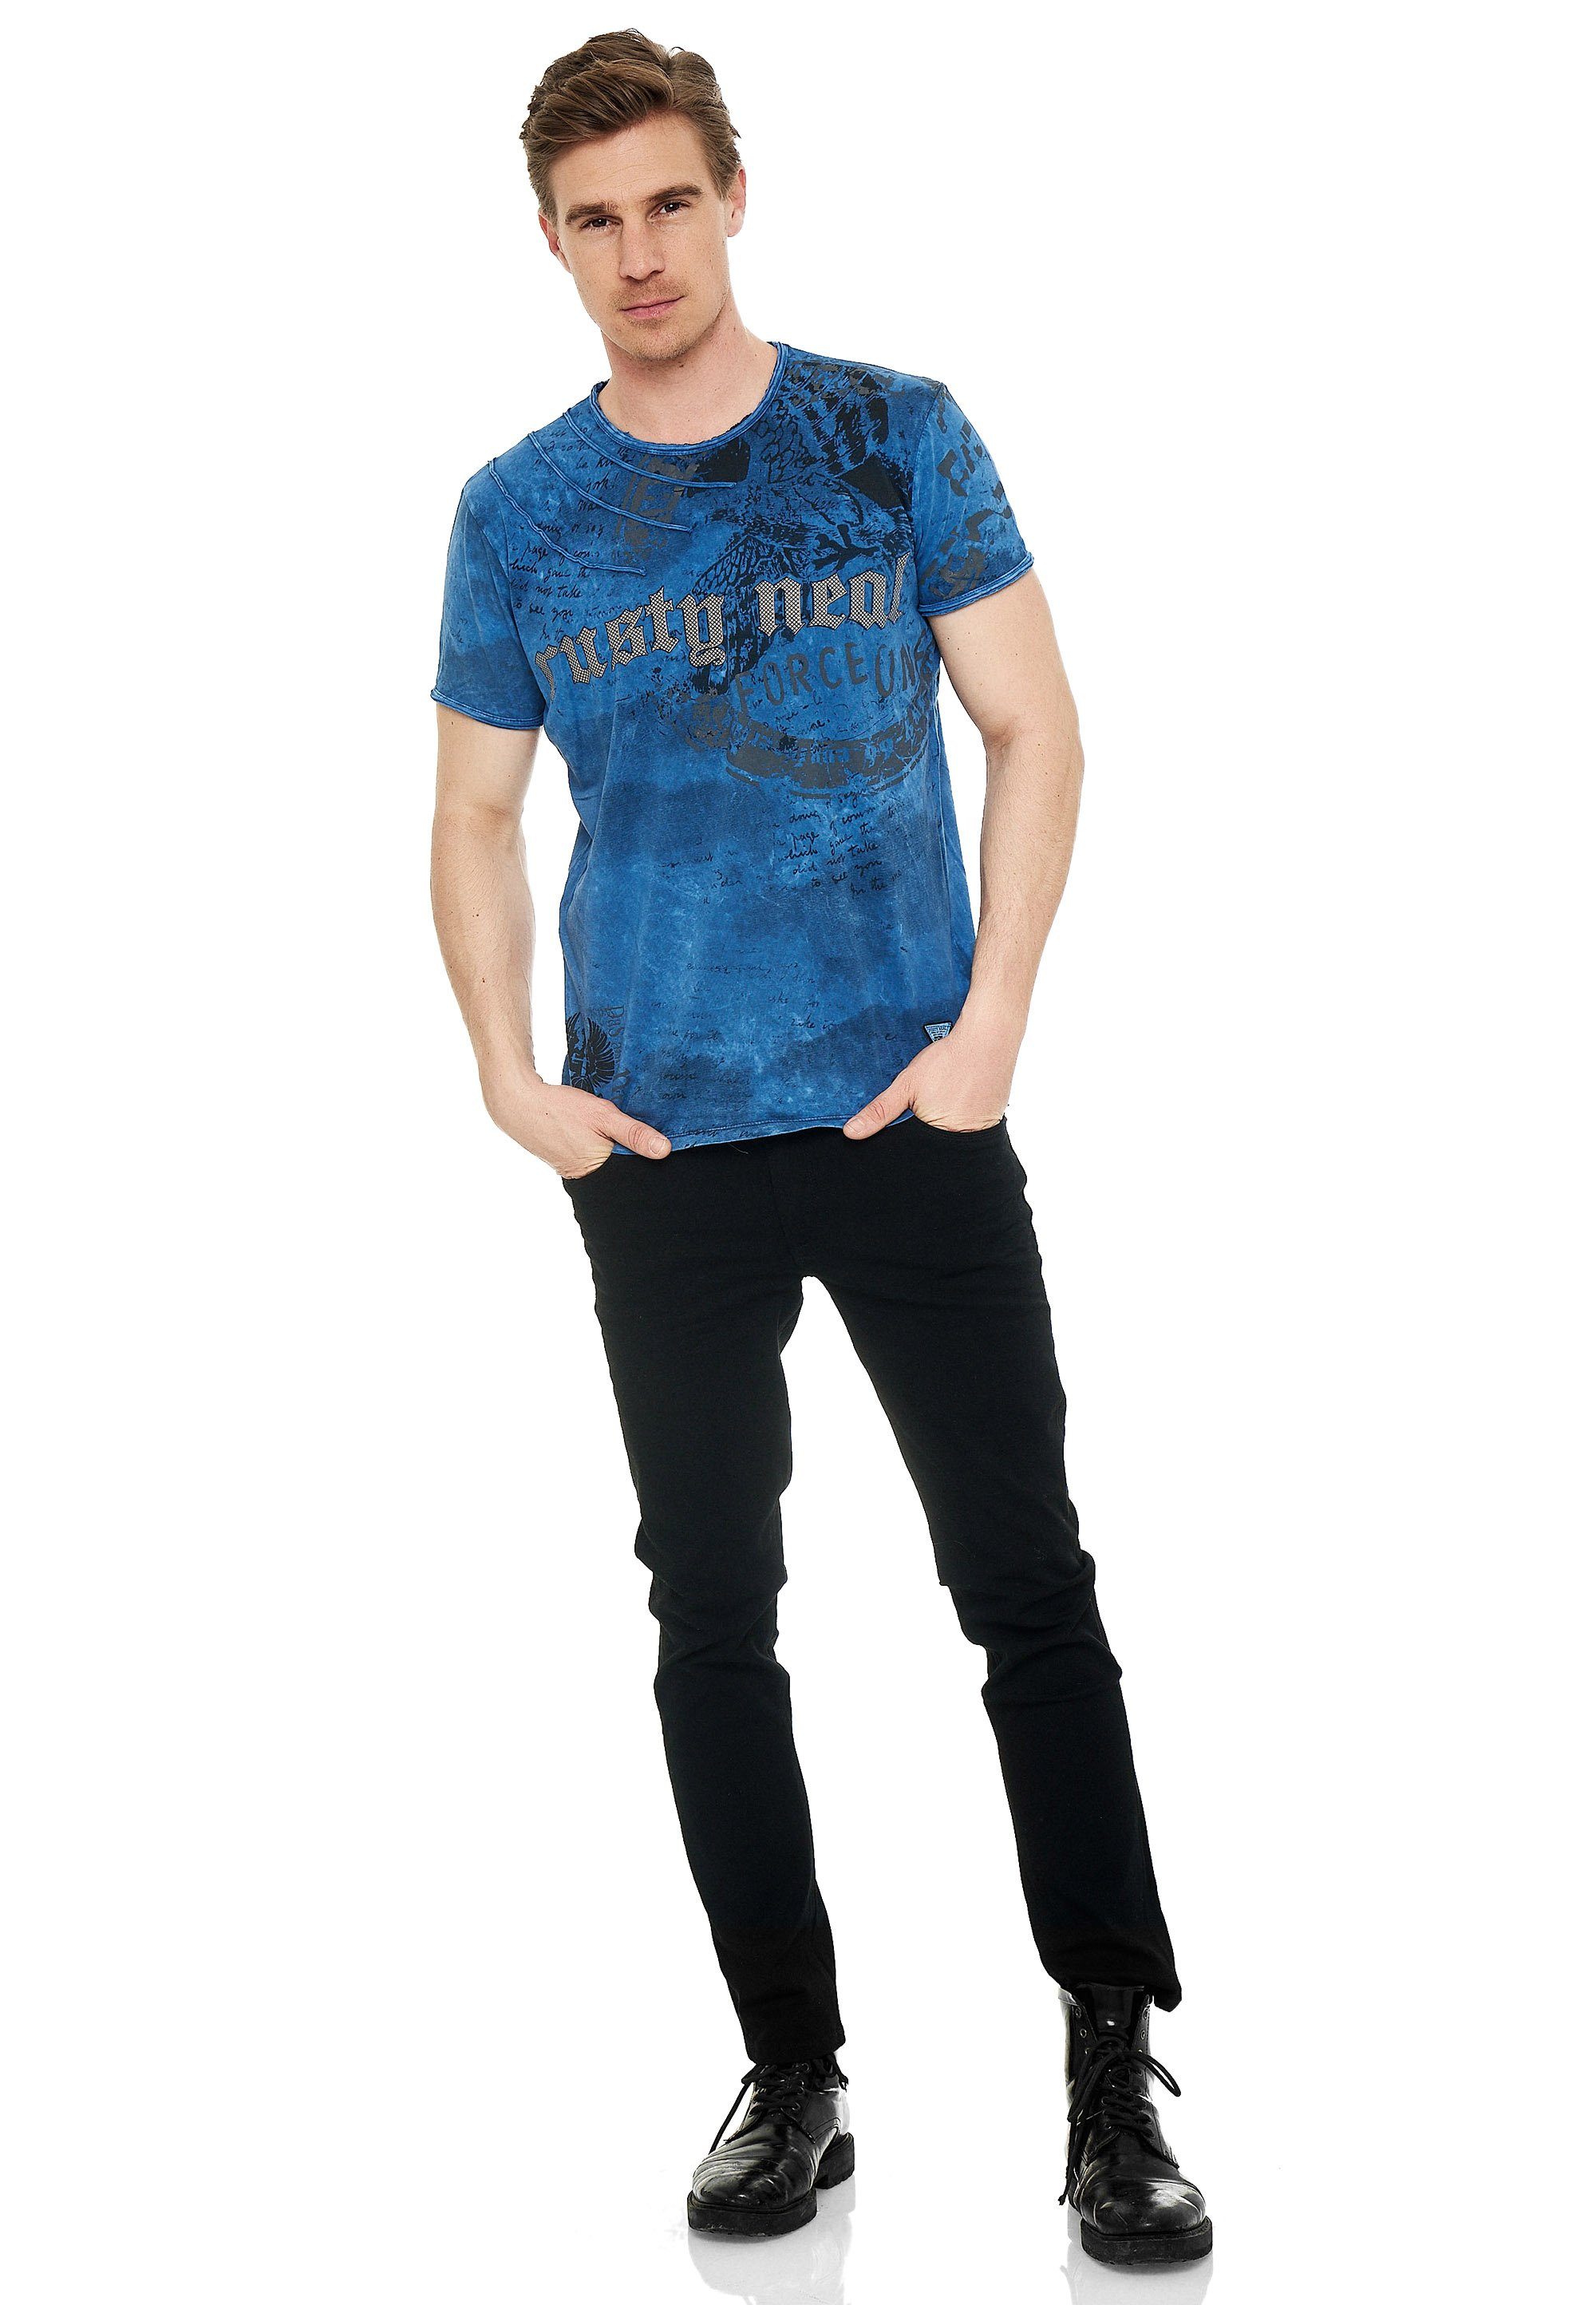 Neal mit blau Print eindrucksvollem T-Shirt Rusty